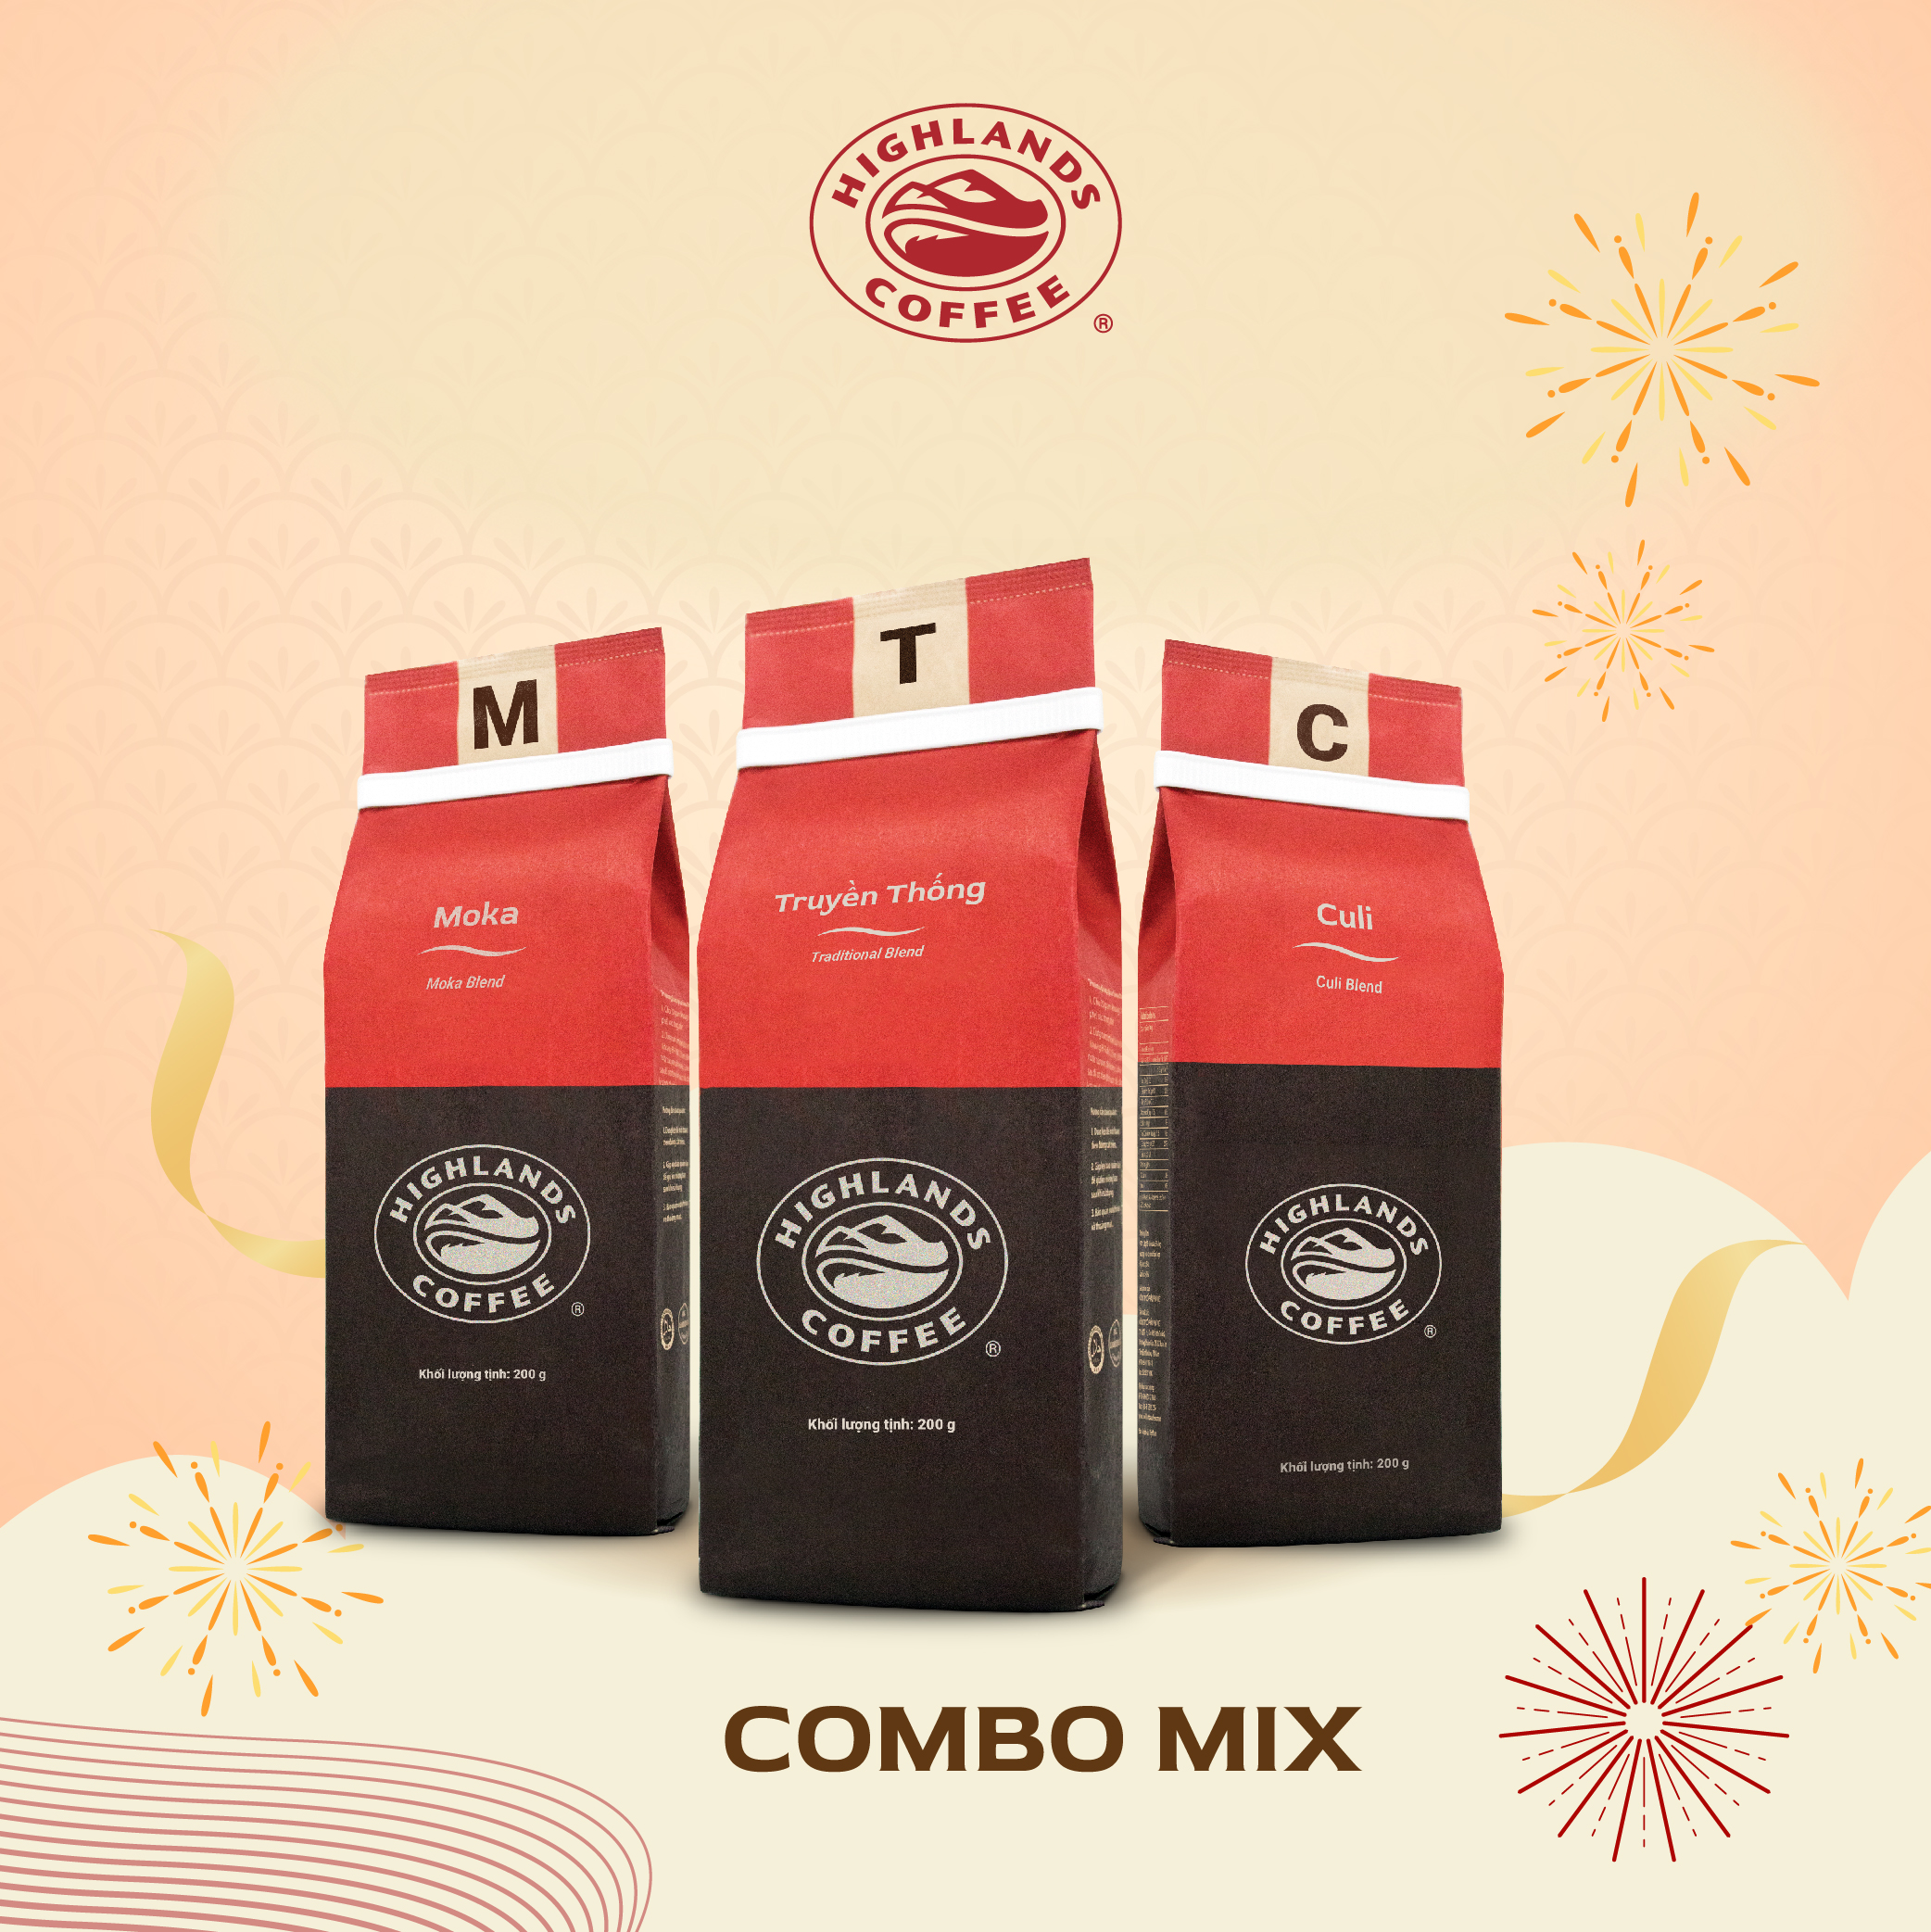 [Combo mix] Combo 3 Cà phê rang xay Culi, Moka, Truyền Thống Highlands Coffee 200g